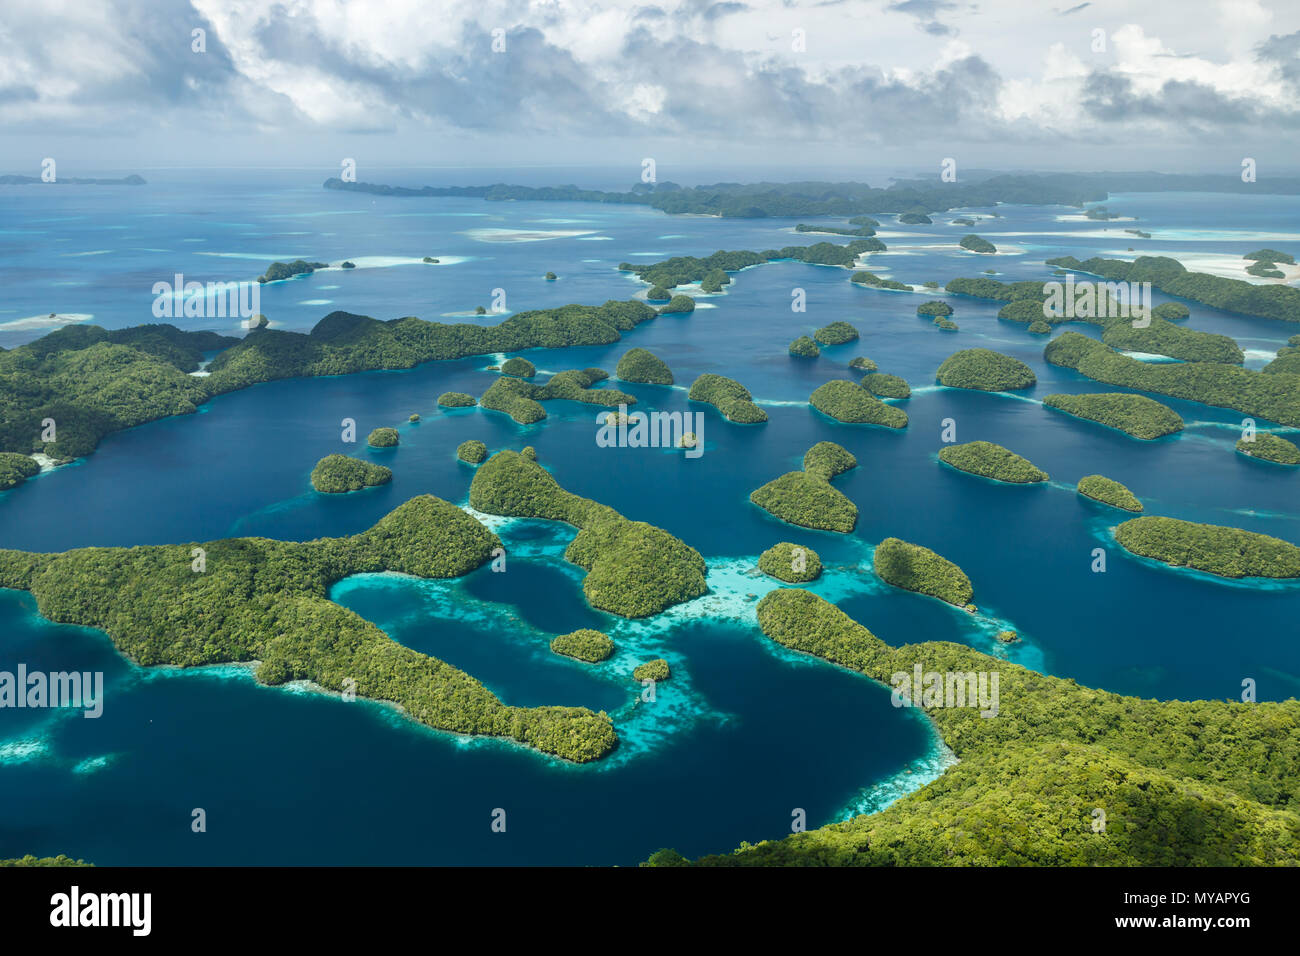 Aus der Vogelperspektive sehen Sie die üppigen Korallenatoll-Inseln, die ein verstreutes Muster im blauen Wasser des südpazifiks bilden Stockfoto